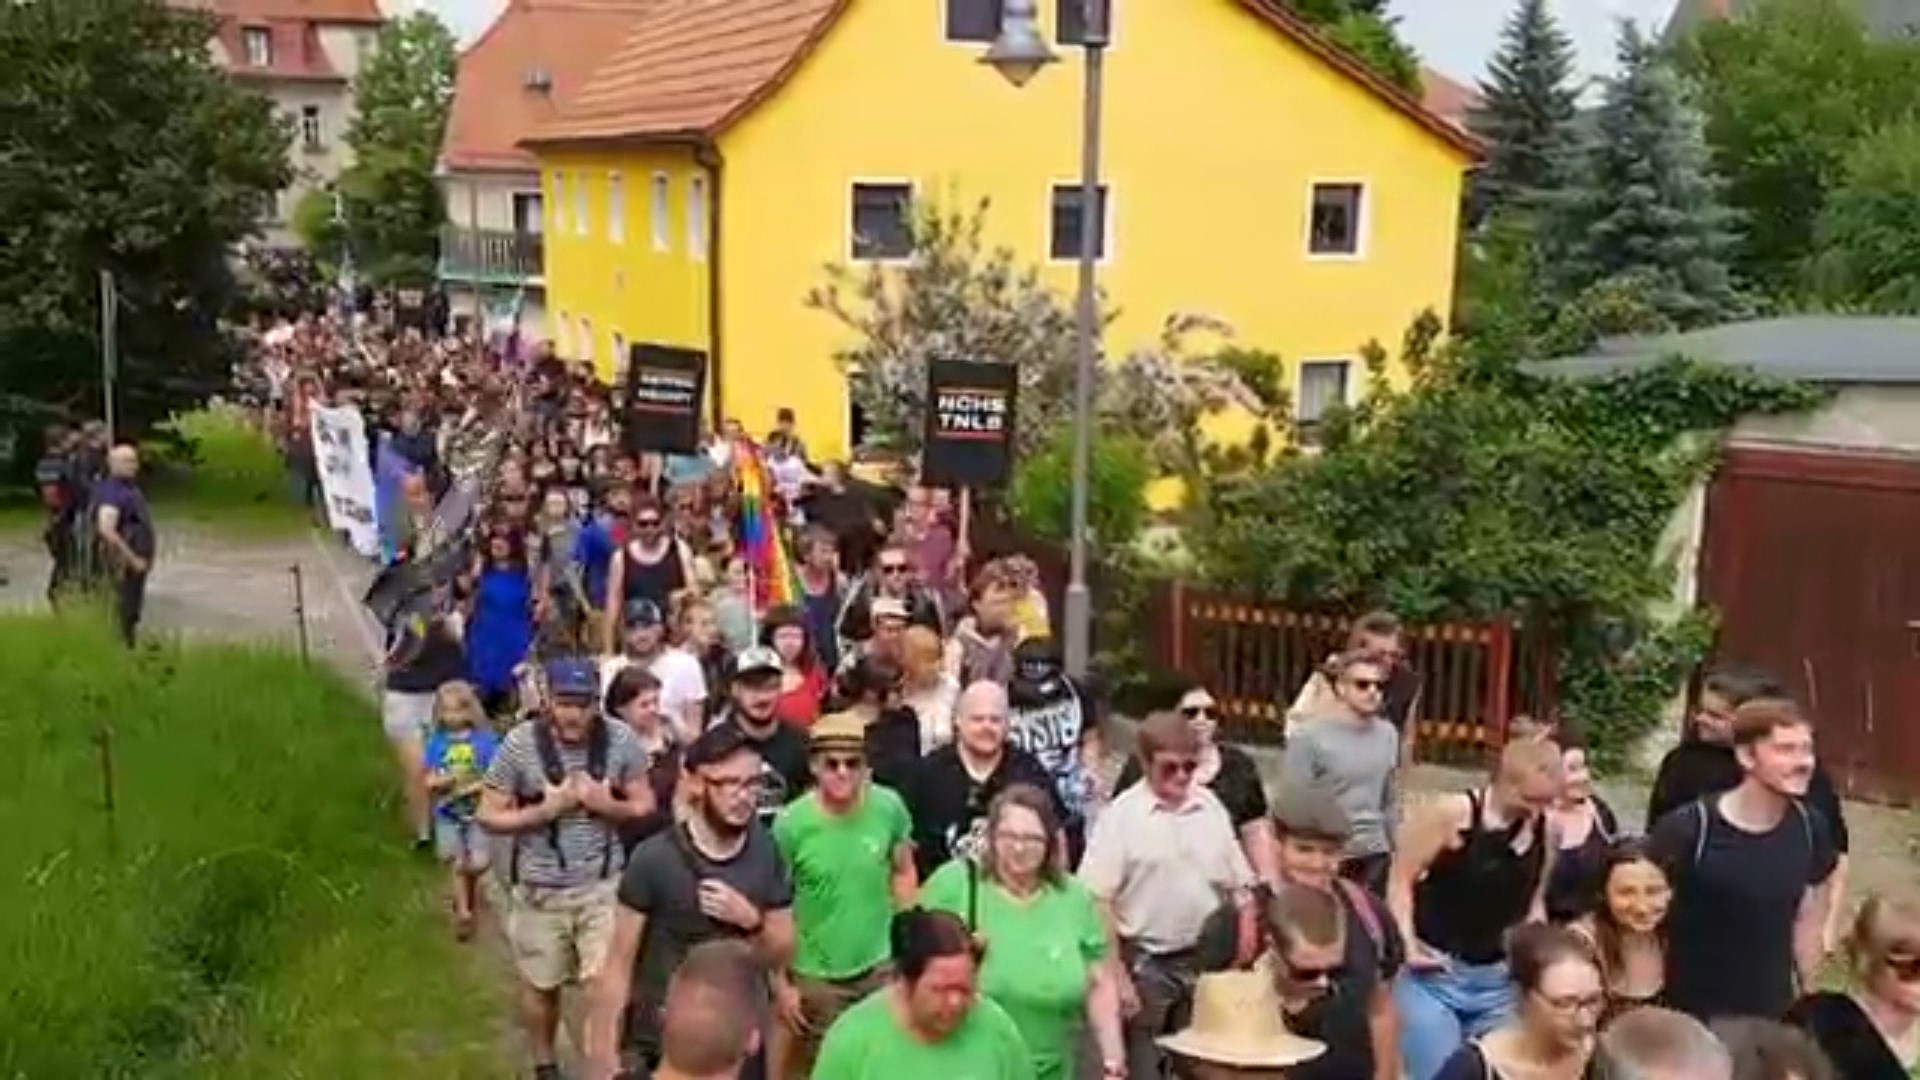 Banorët e fshatit gjerman blejnë gjithë birrën për të bojkotuar festivalin neonazist